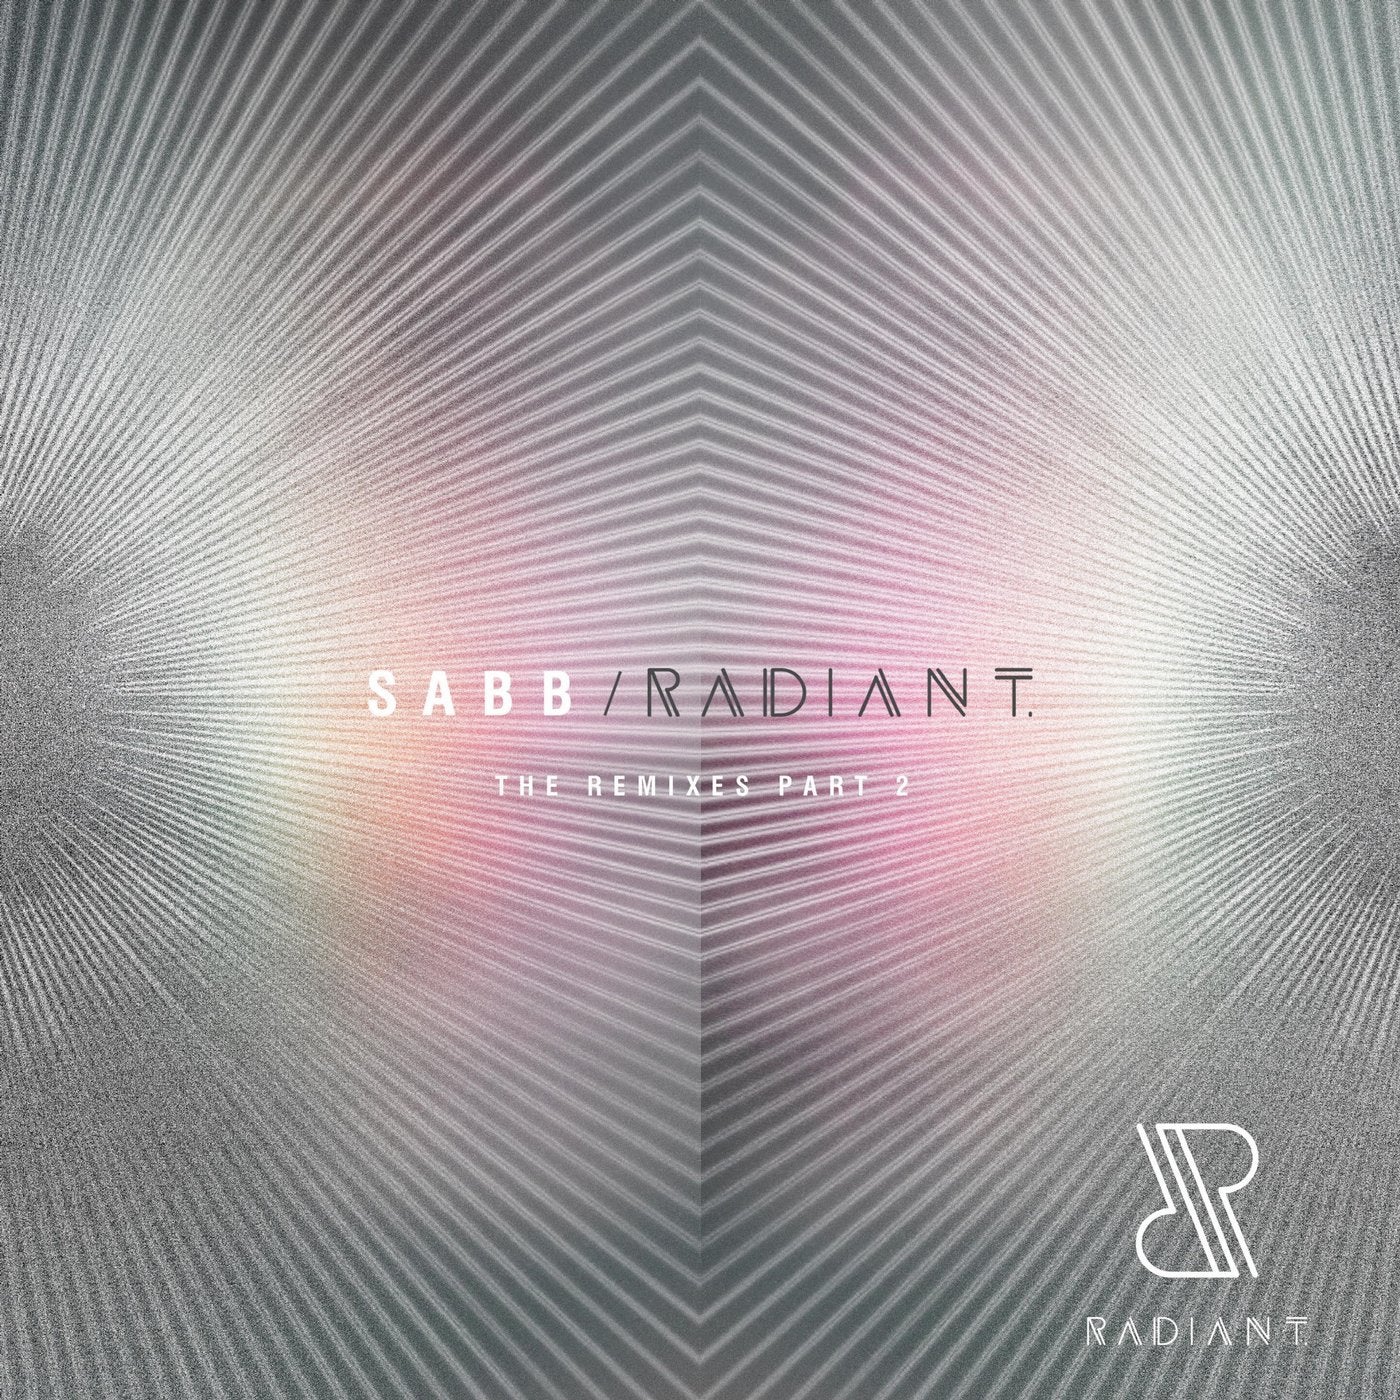 RADIANT The Remixes, Part 2